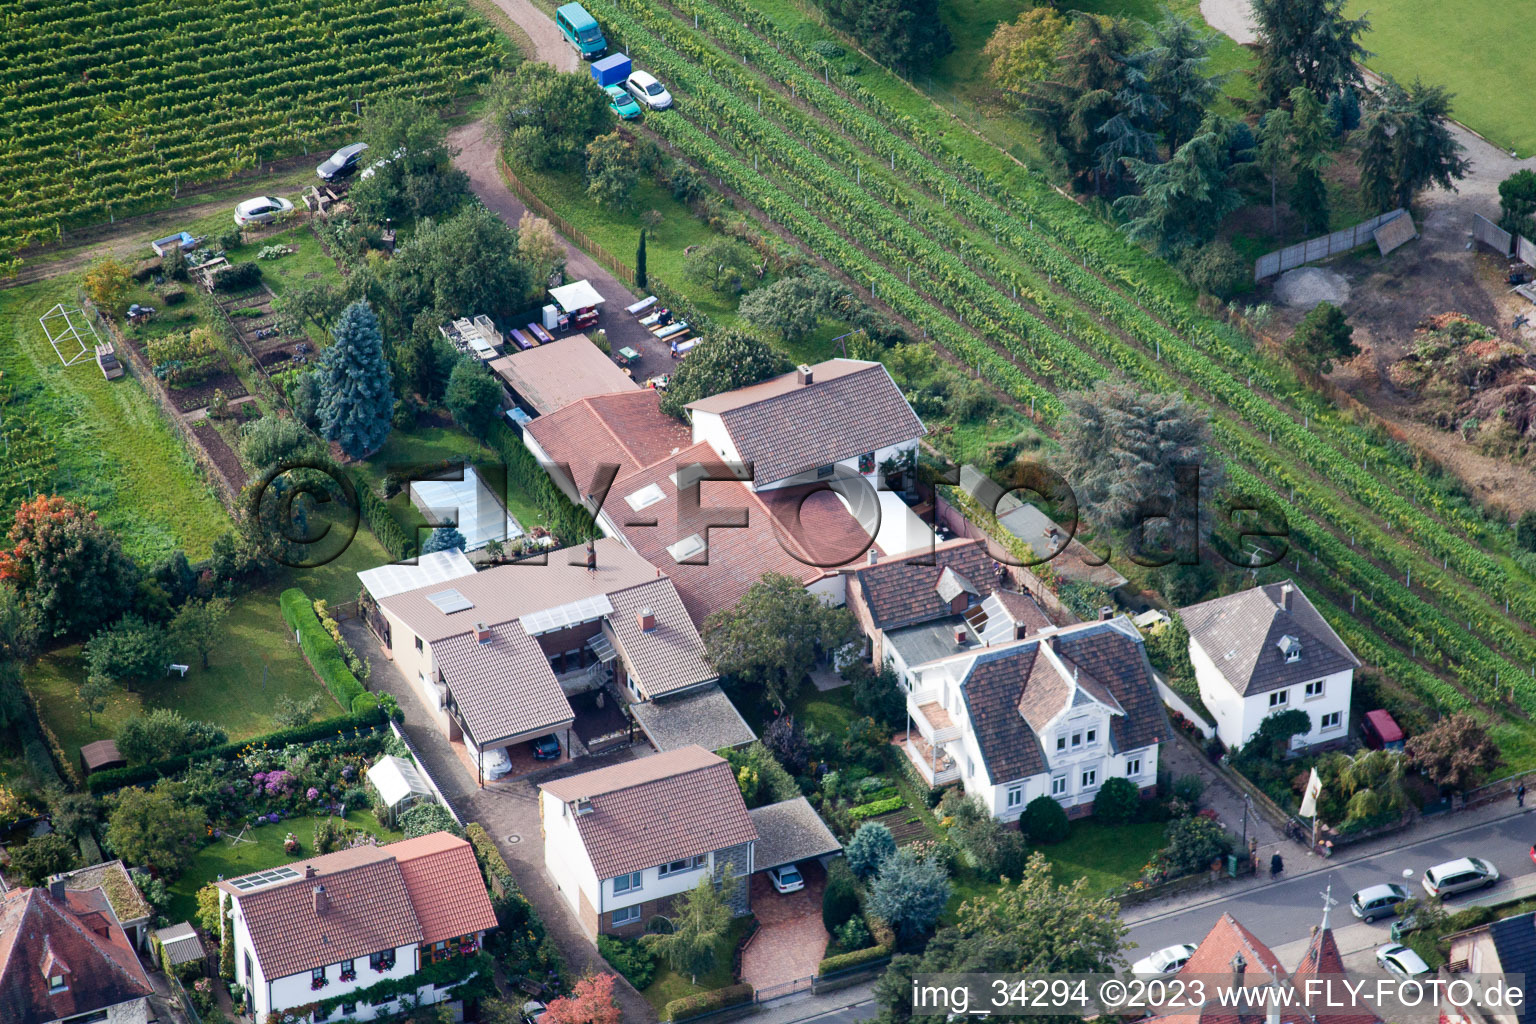 Aerial view of Zimmermann's apple days in Wachenheim an der Weinstraße in the state Rhineland-Palatinate, Germany